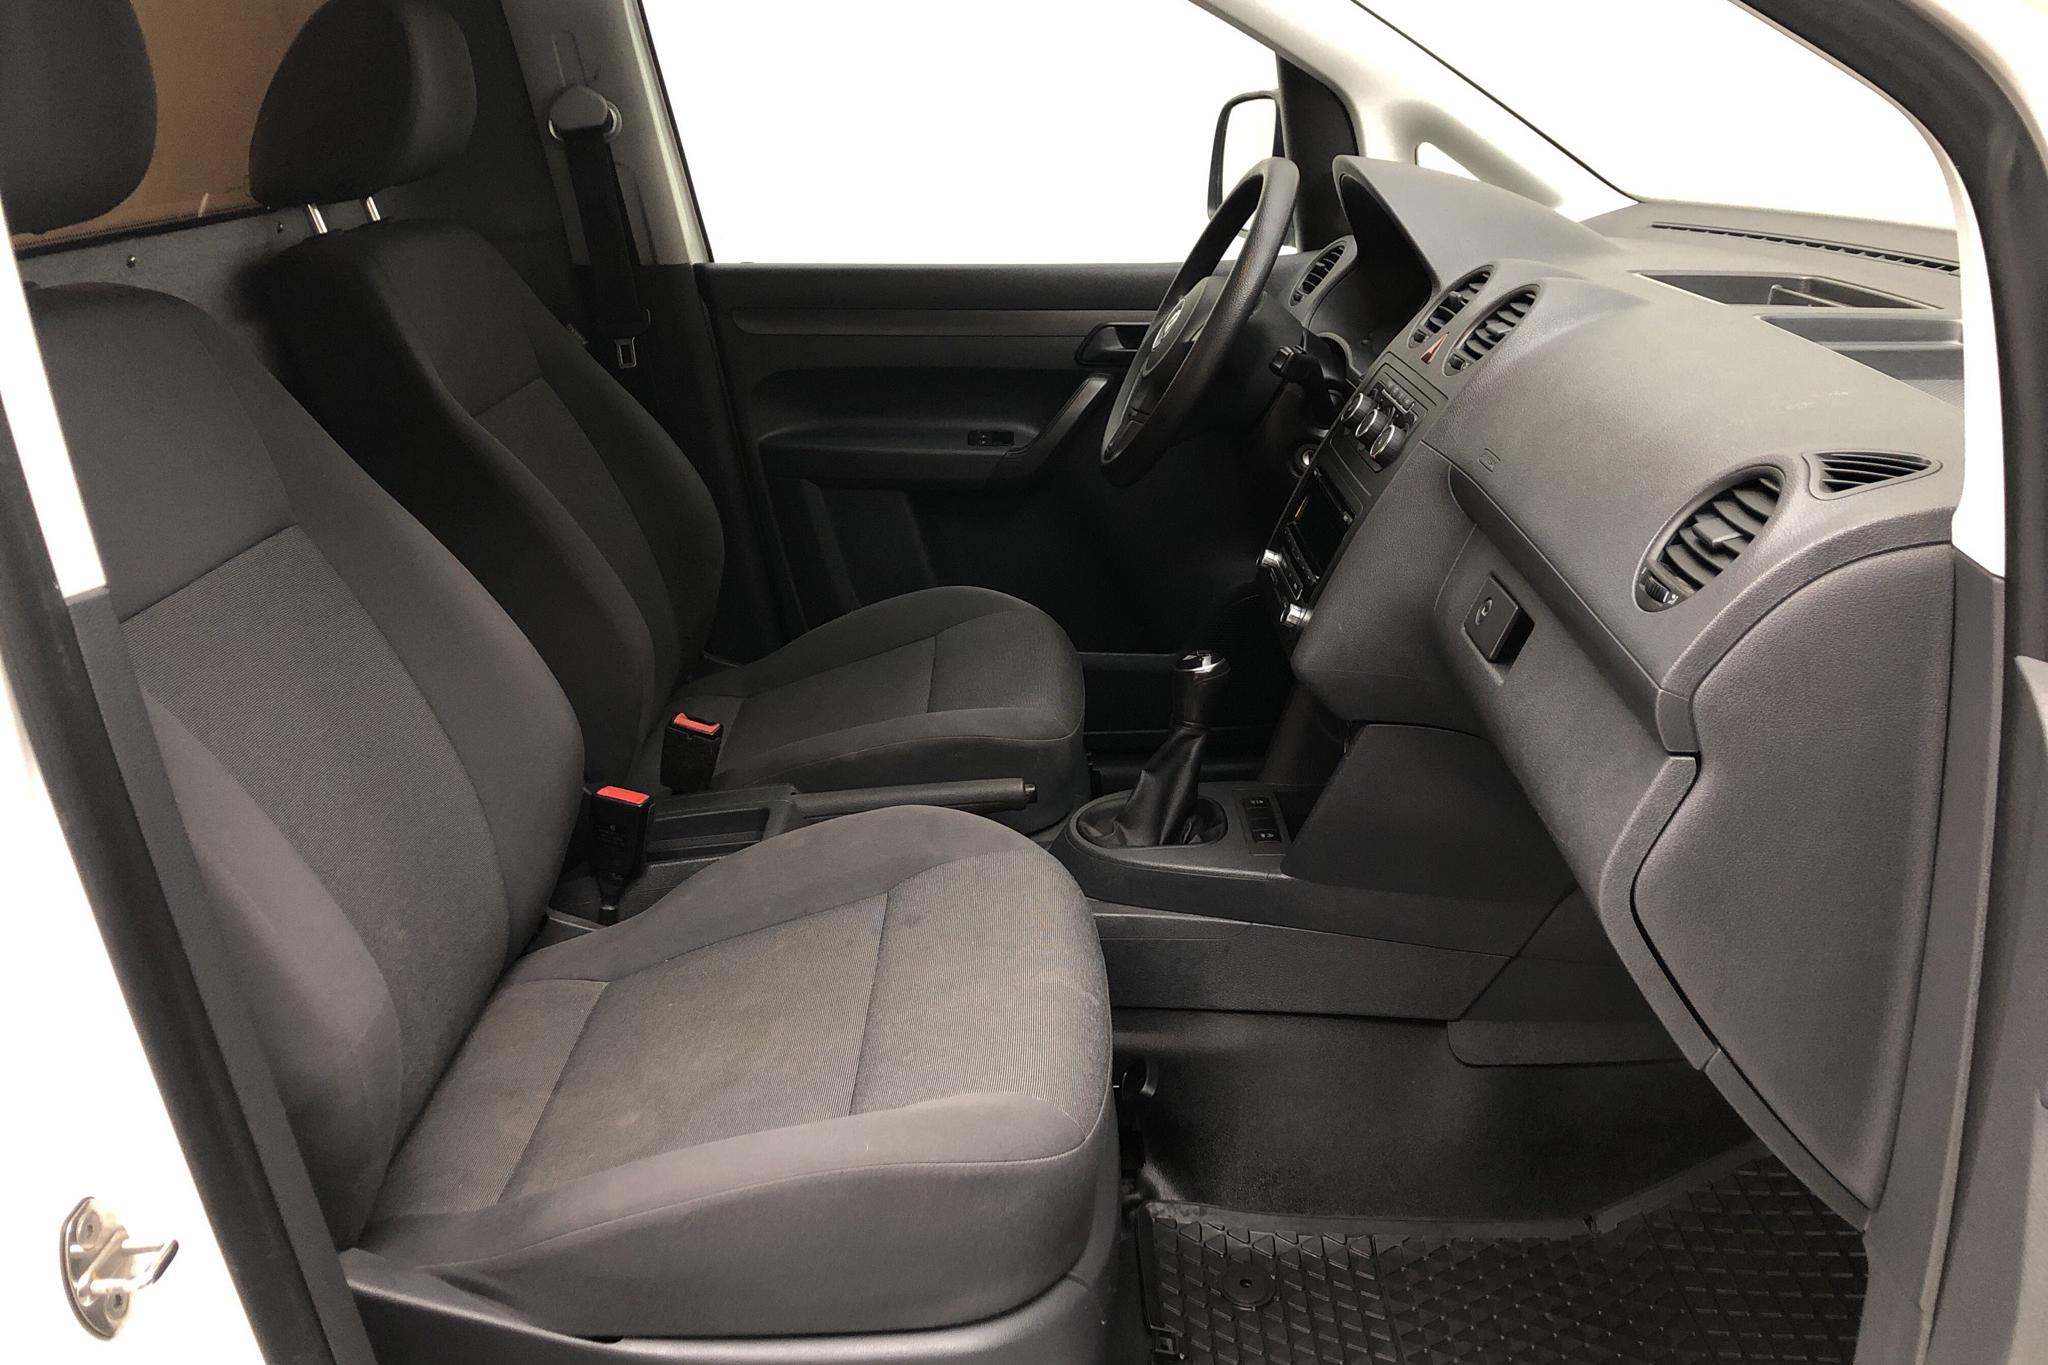 VW Caddy 1.6 TDI Skåp (75hk) - 14 897 mil - Manuell - vit - 2015